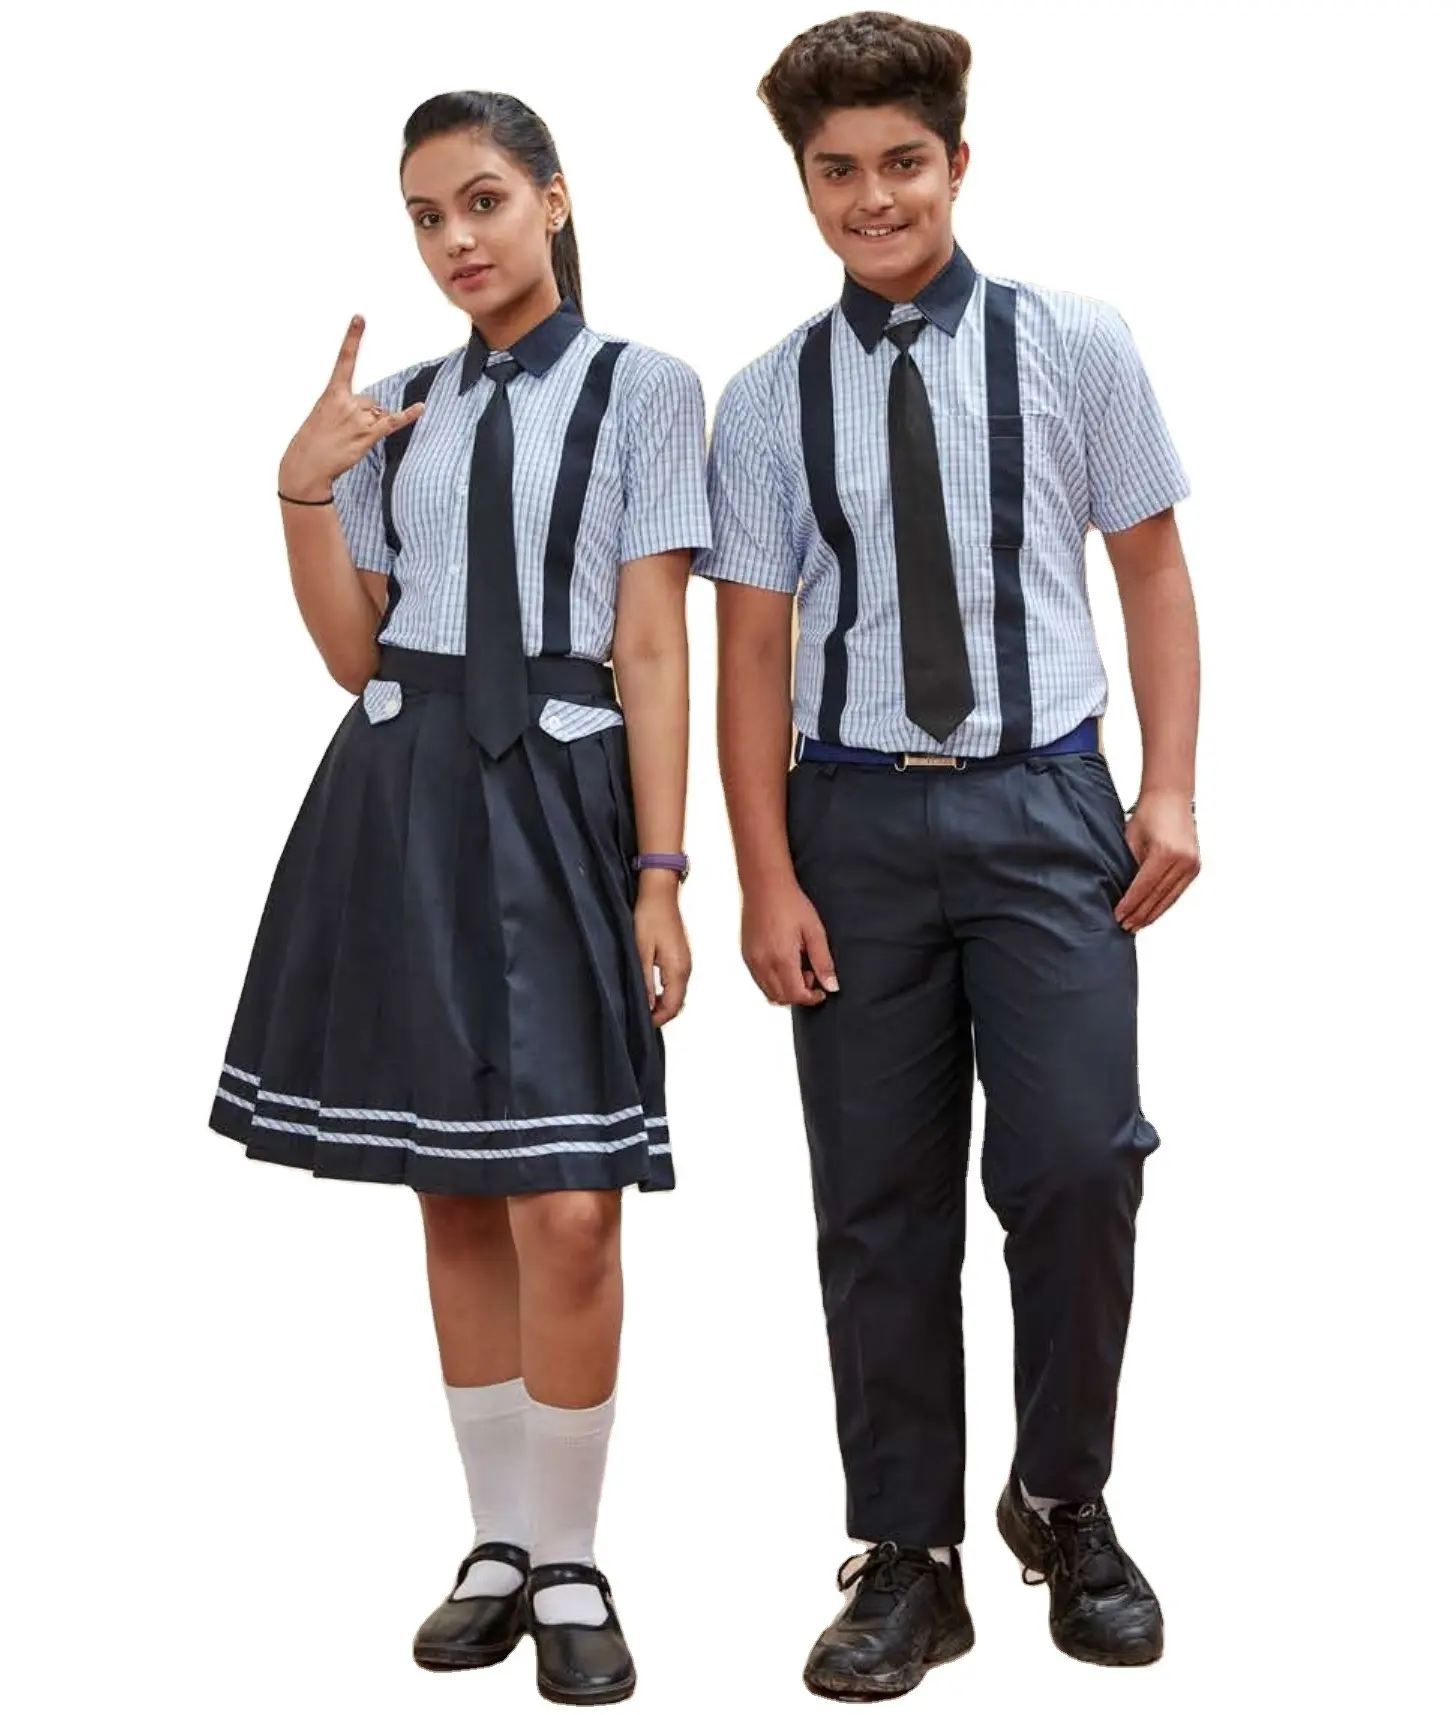 Nouveaux modèles d'uniformes scolaires pour garçons et filles, fabricant d'uniformes scolaires à manches courtes